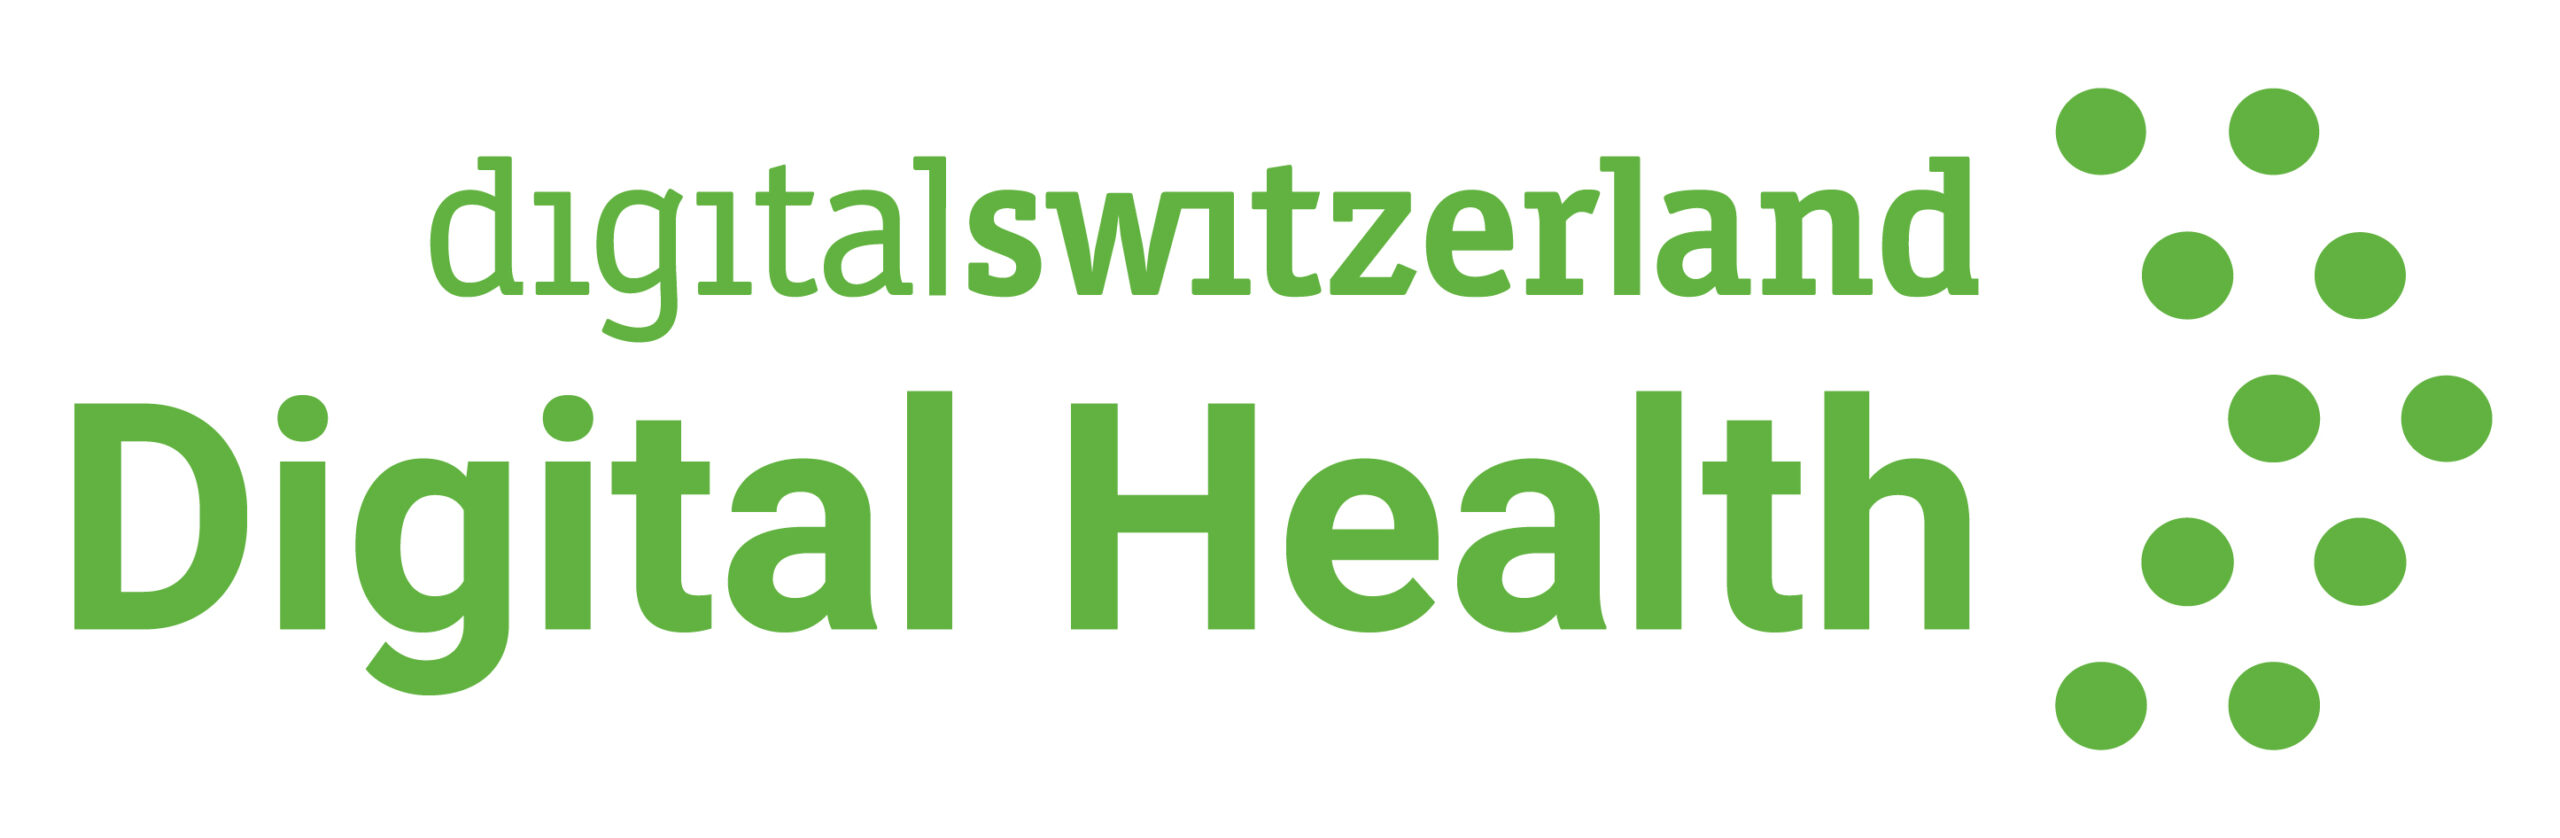 Digital Health logo